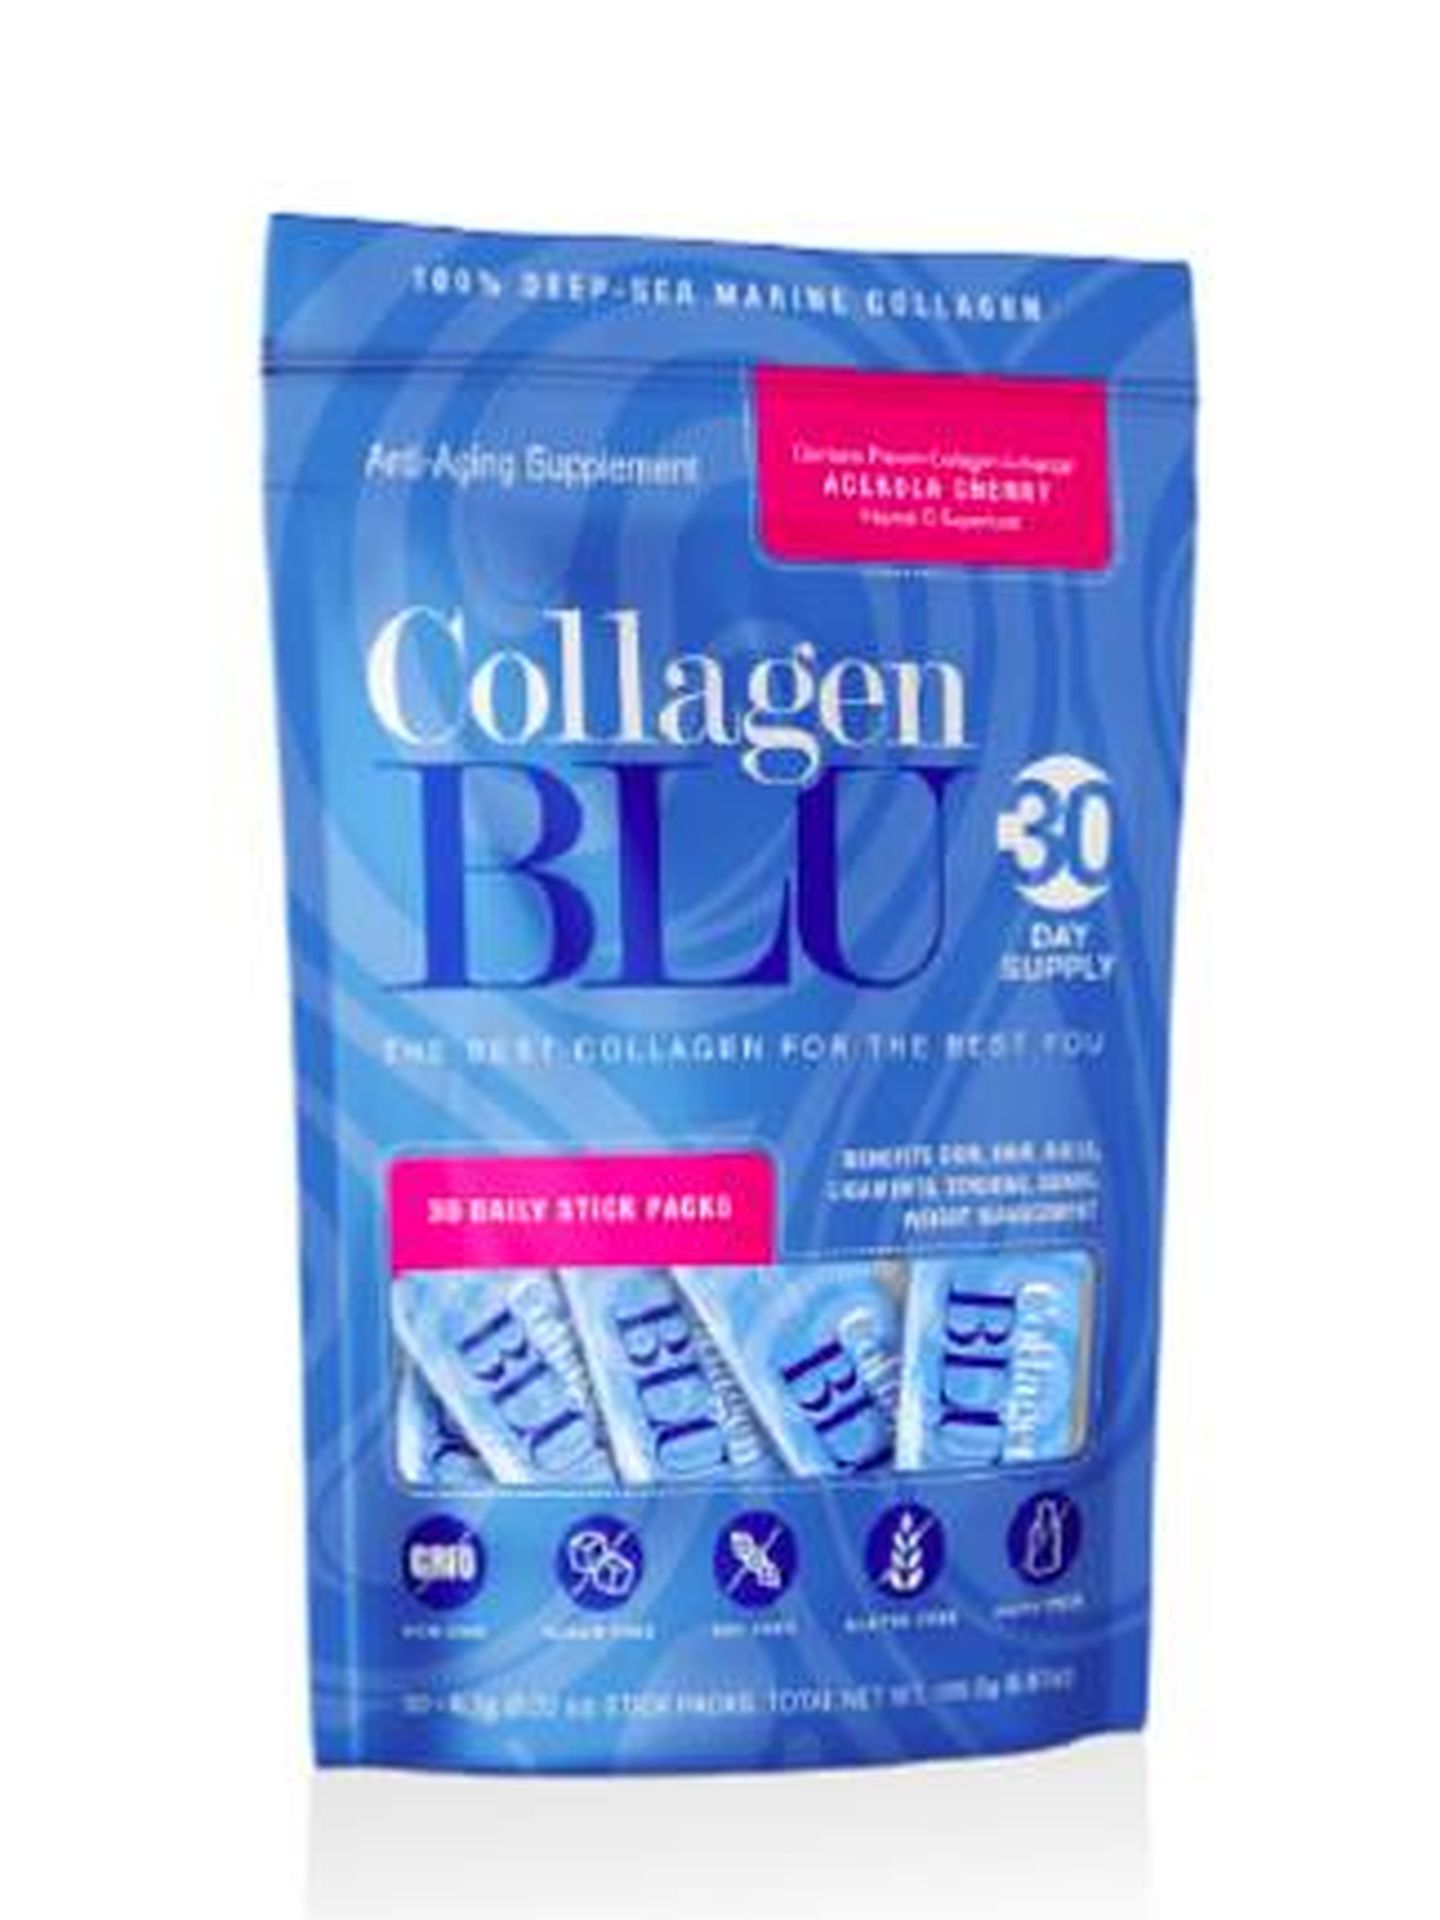 Colágeno de Collagen Blu. (Cortesía)